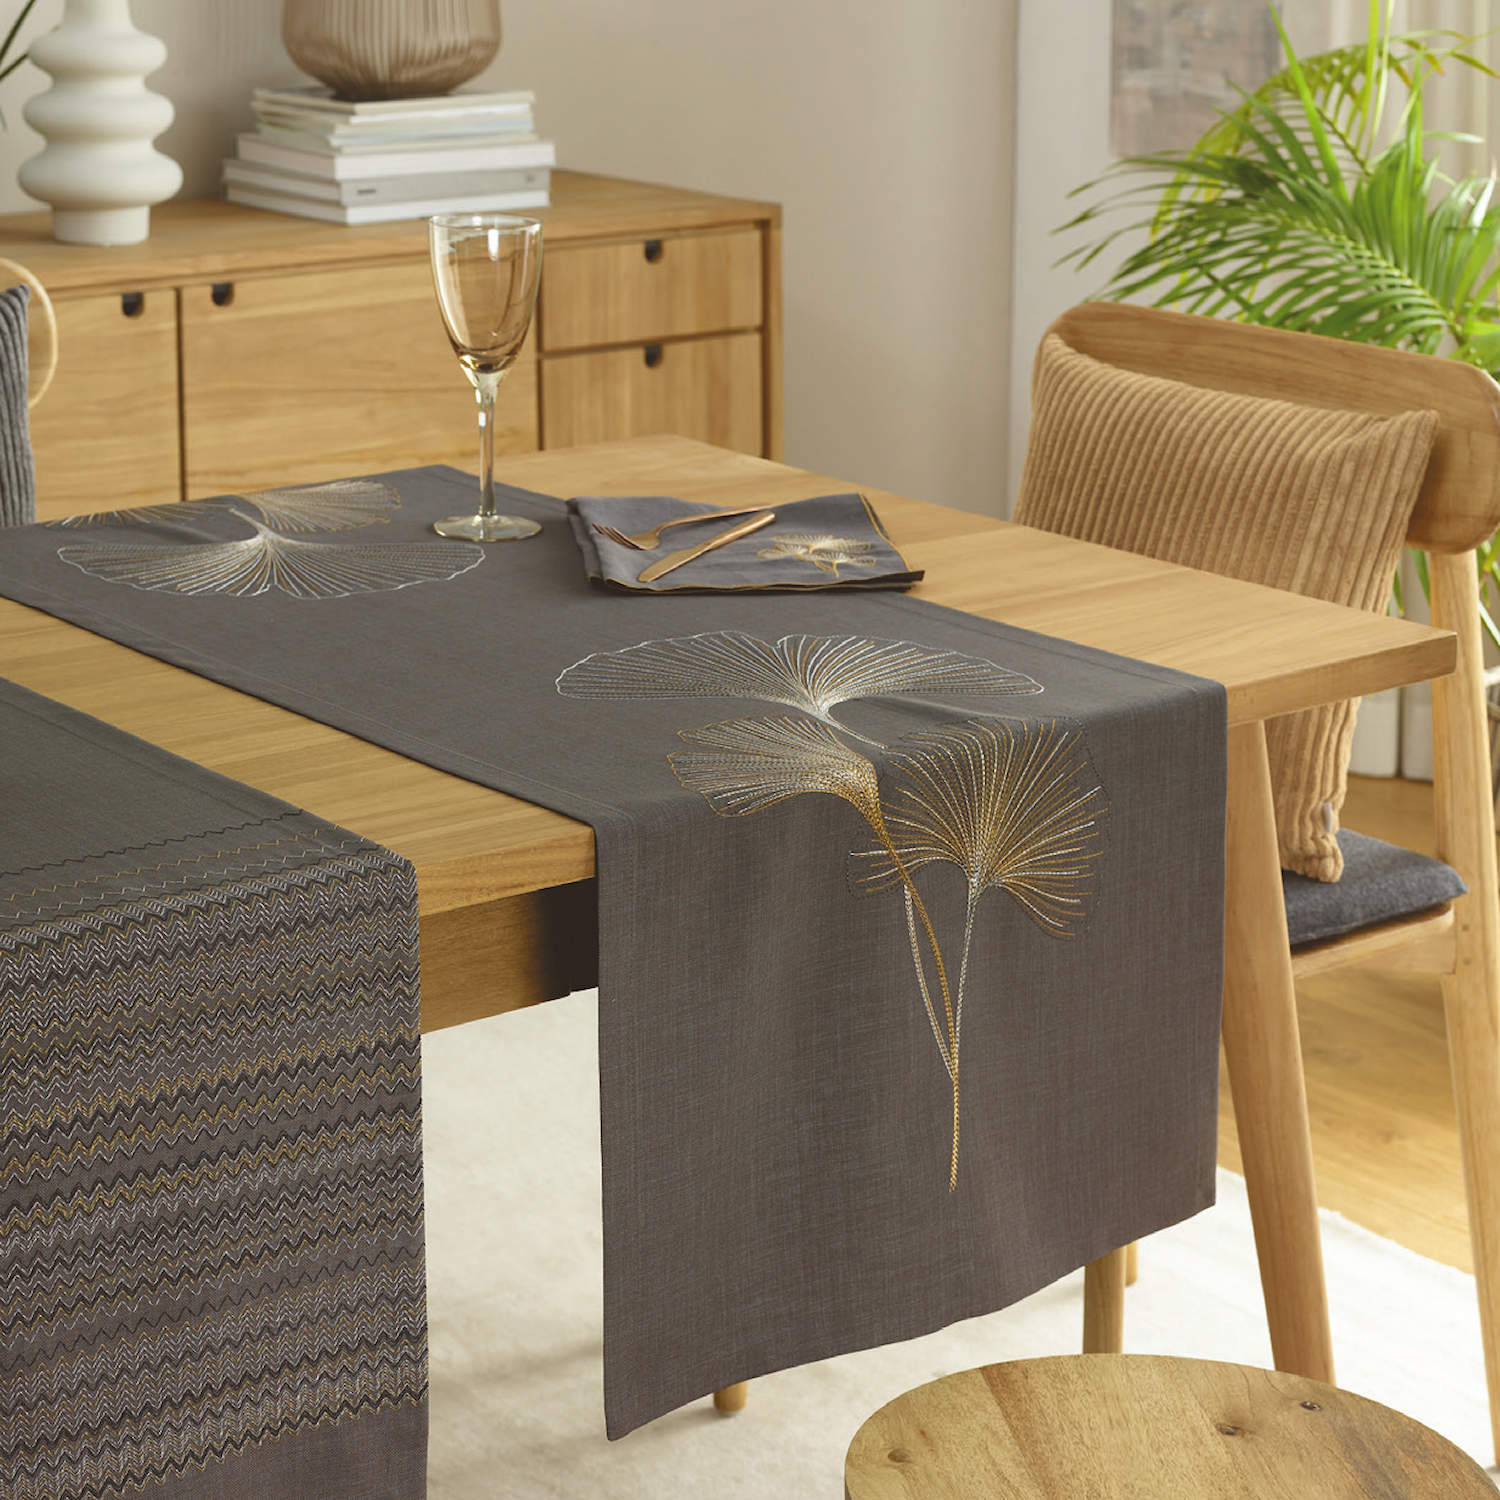 Tischläufer BILOBA mit handgeführter Stickerei von Sander table&home |  Sander Tischwäsche